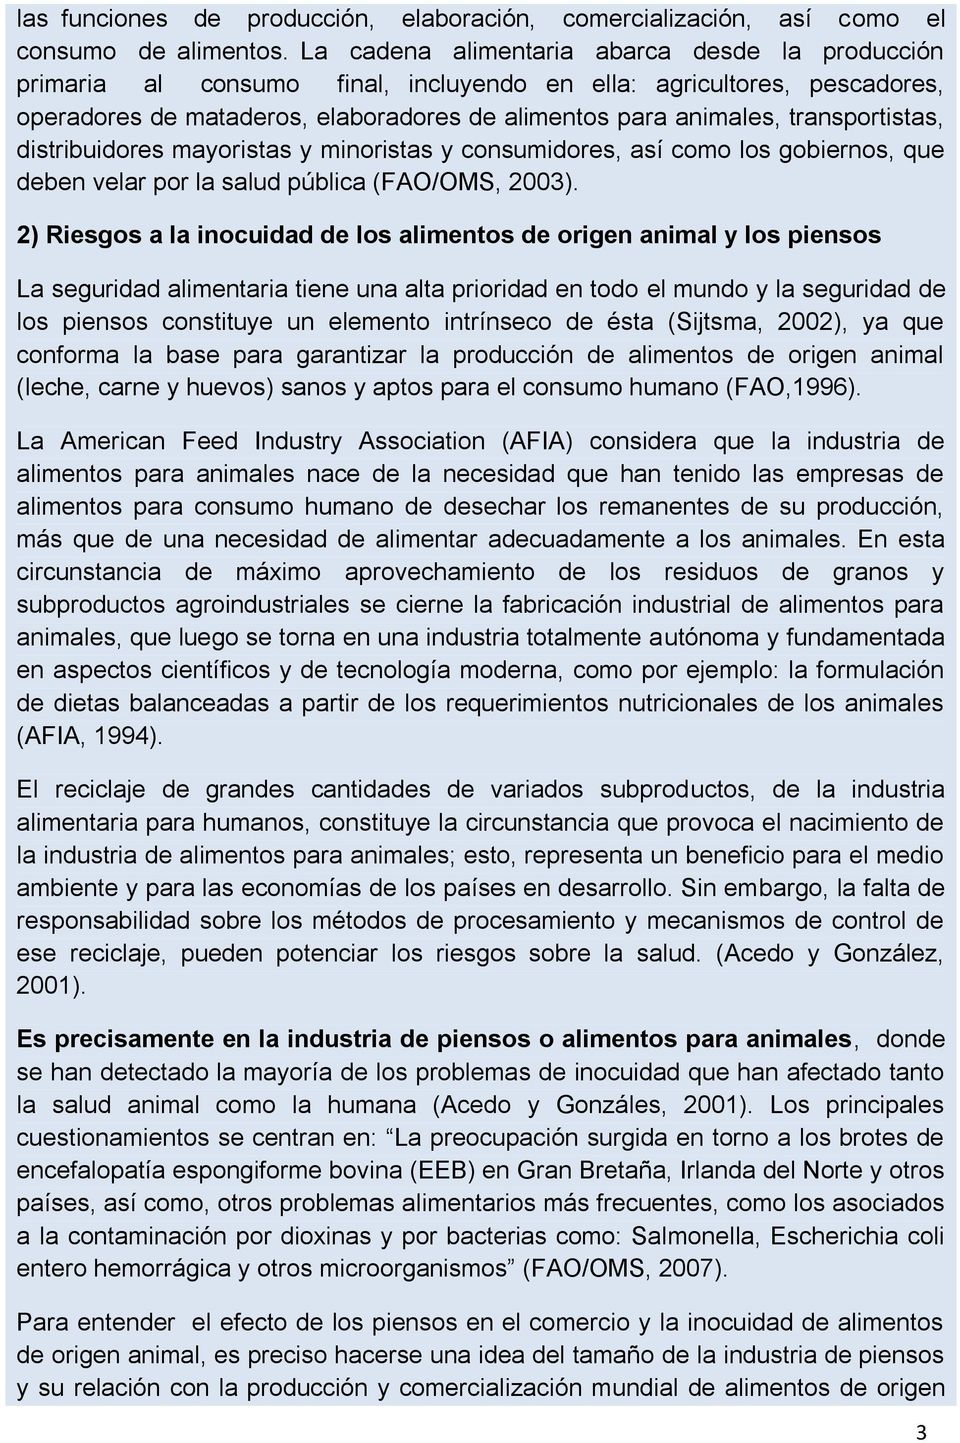 transportistas, distribuidores mayoristas y minoristas y consumidores, así como los gobiernos, que deben velar por la salud pública (FAO/OMS, 2003).